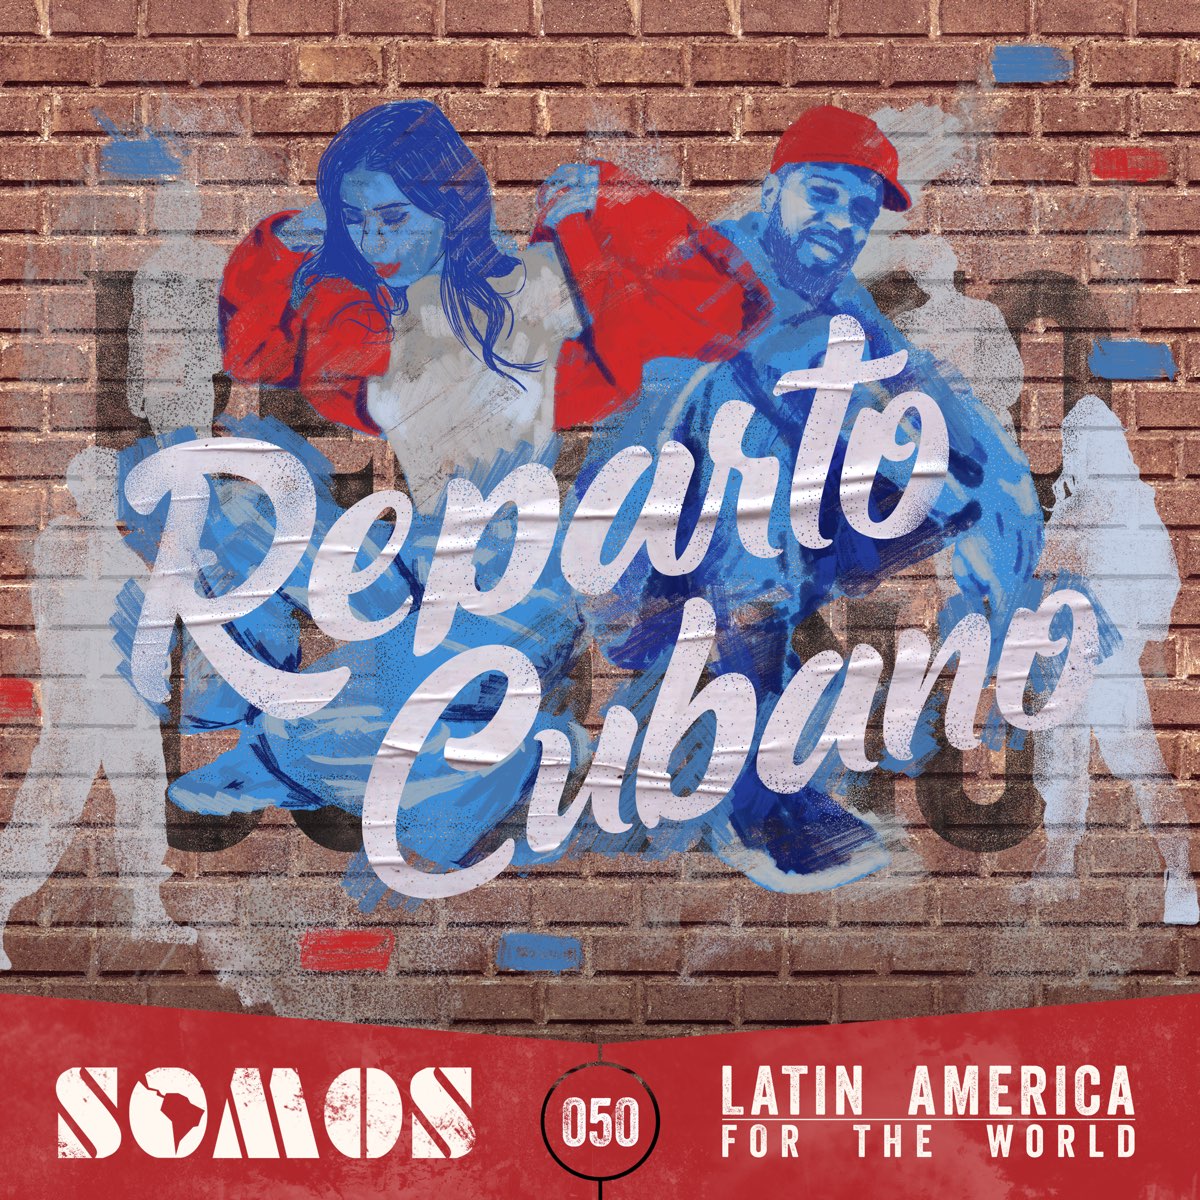 ‎Reparto Cubano EP by Alca2bleA on Apple Music